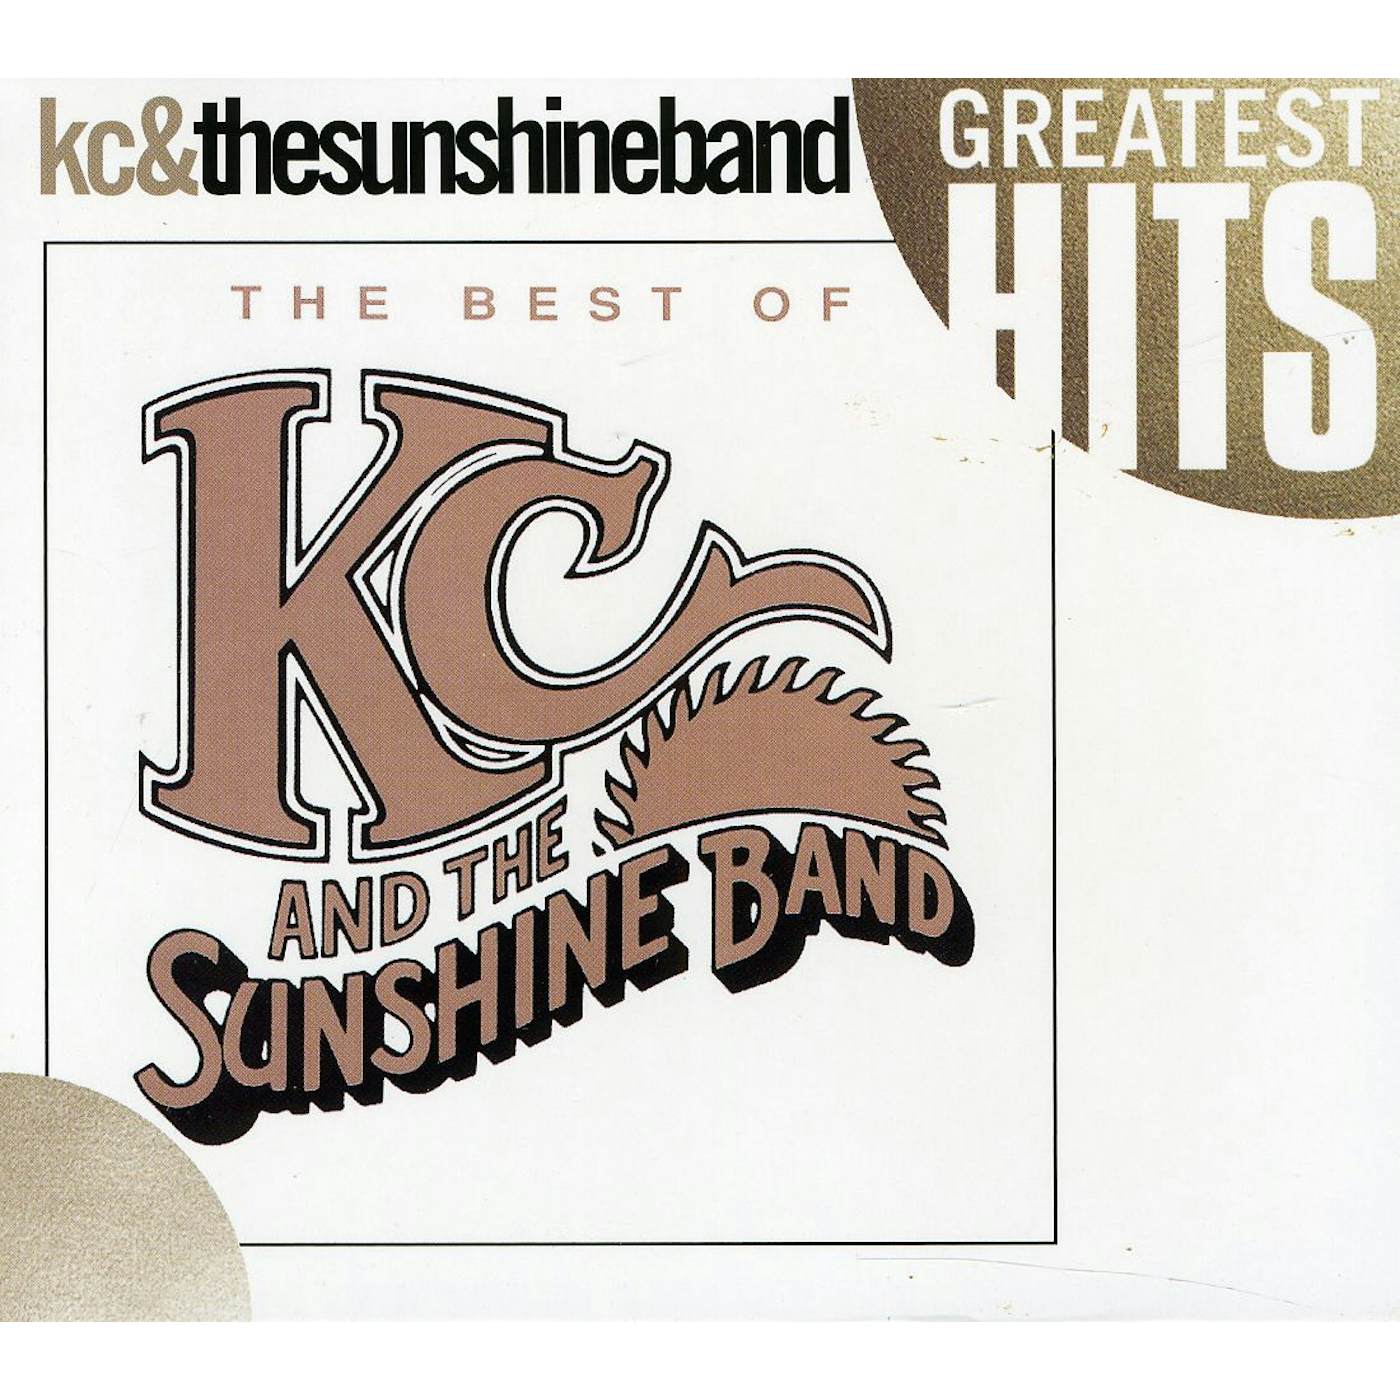 K.C. & SUNSHINE BAND BEST OF CD